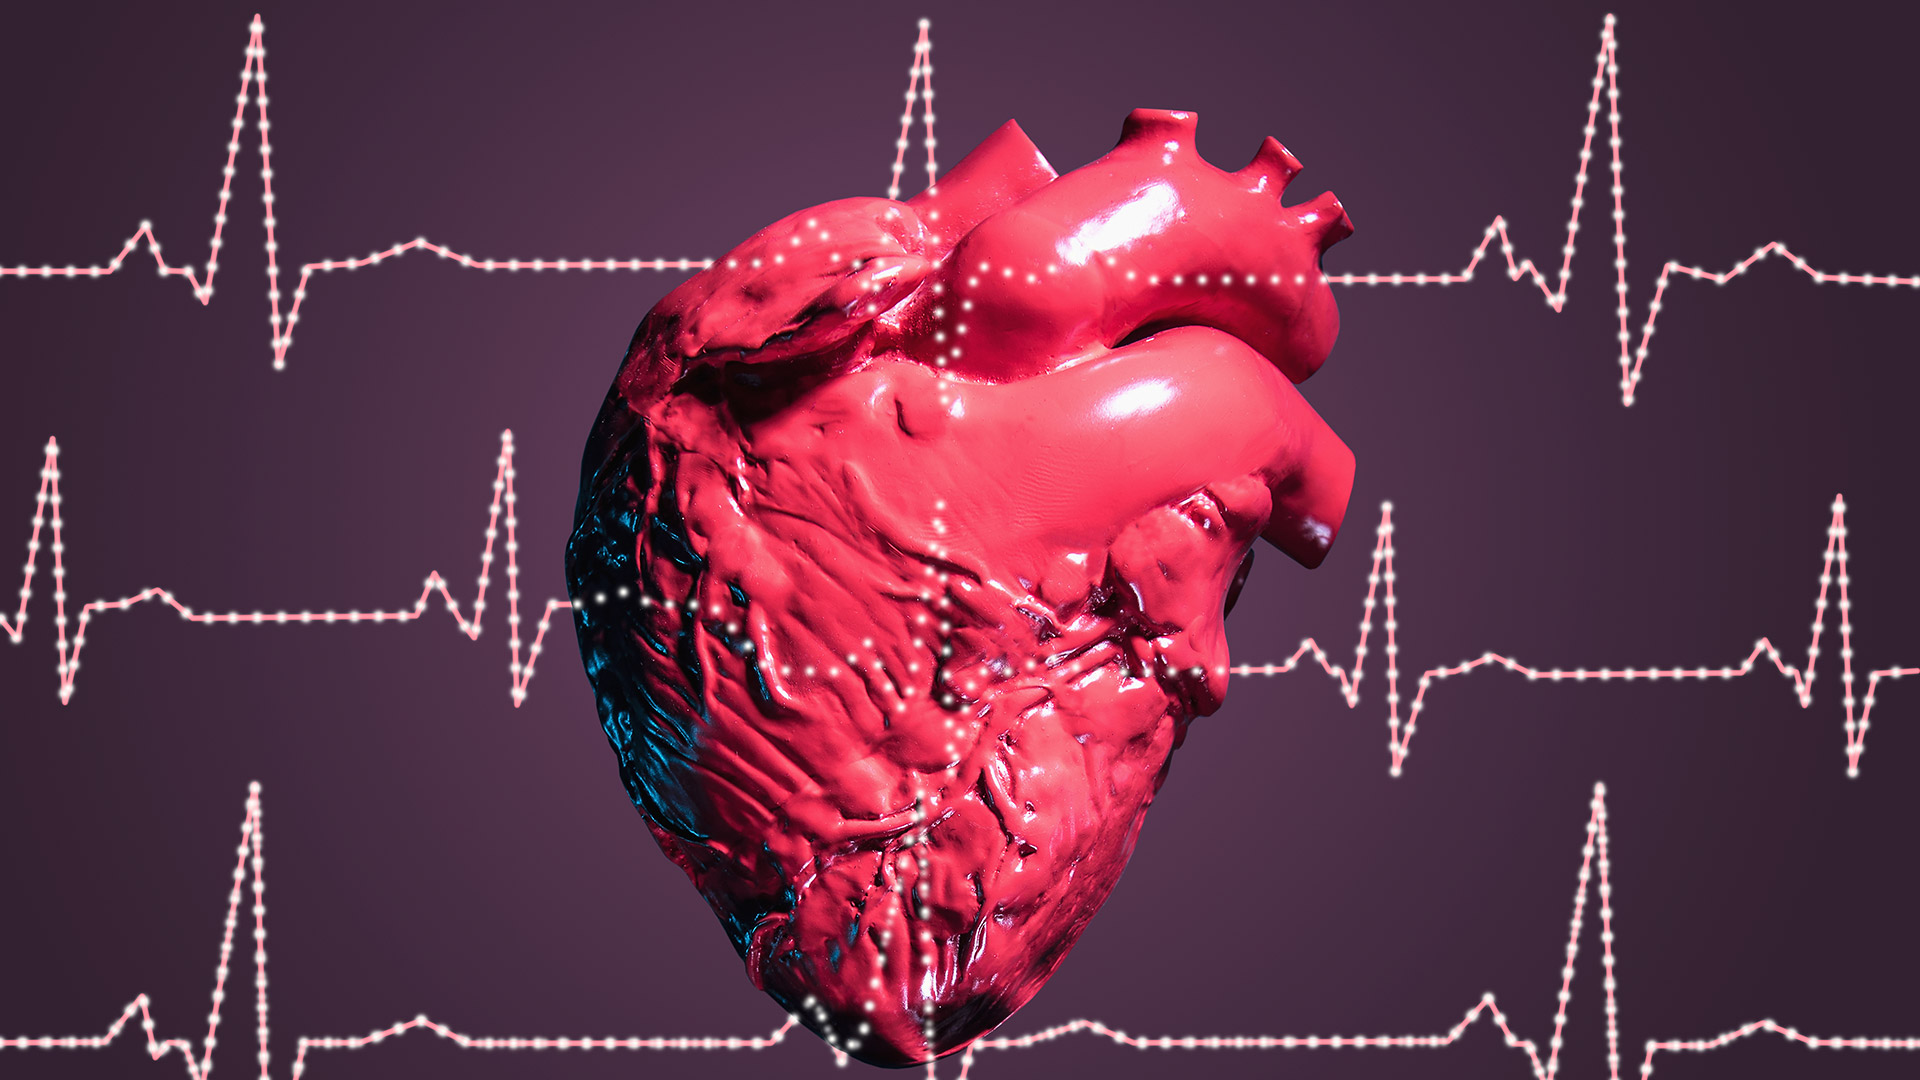 Cuando los latidos del corazón superan los 100, se denomina arritmia y es necesario acudir al médico para determinar la razón de esta situación / Getty